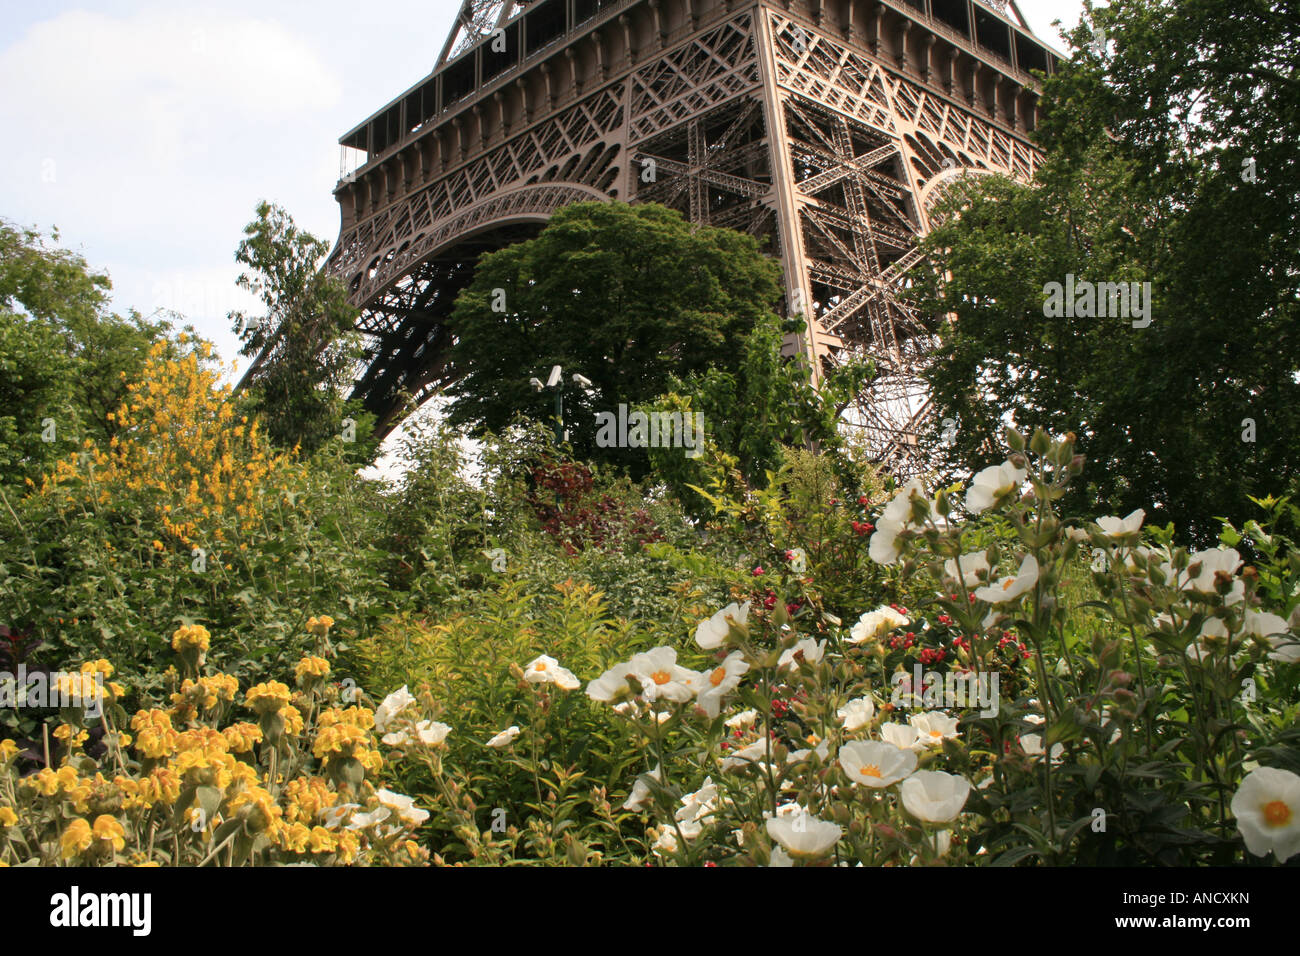 Les jardins de la Tour Eiffel, Paris France Banque D'Images